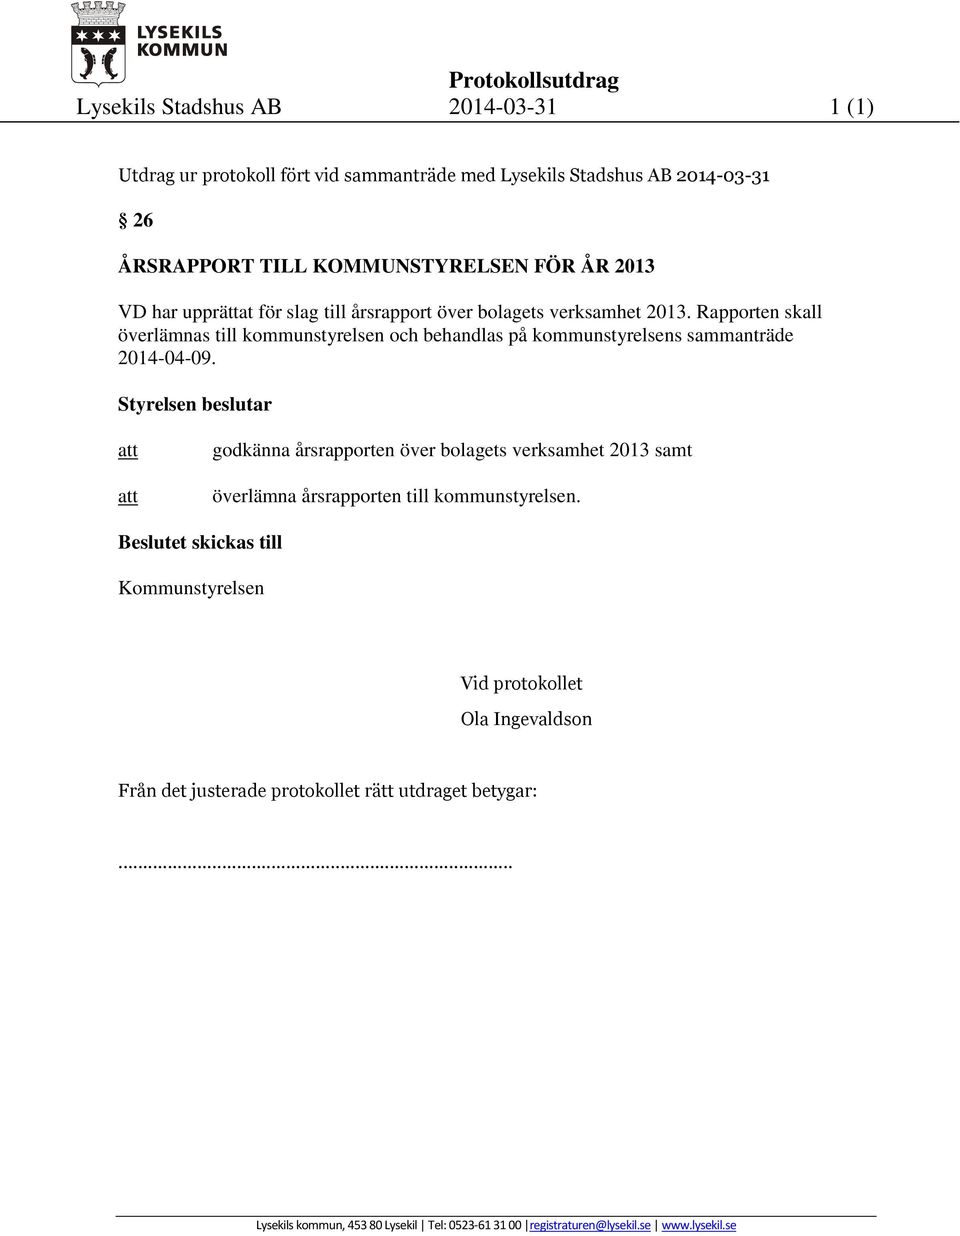 Rapporten skall överlämnas till kommunstyrelsen och behandlas på kommunstyrelsens sammanträde 2014-04-09.